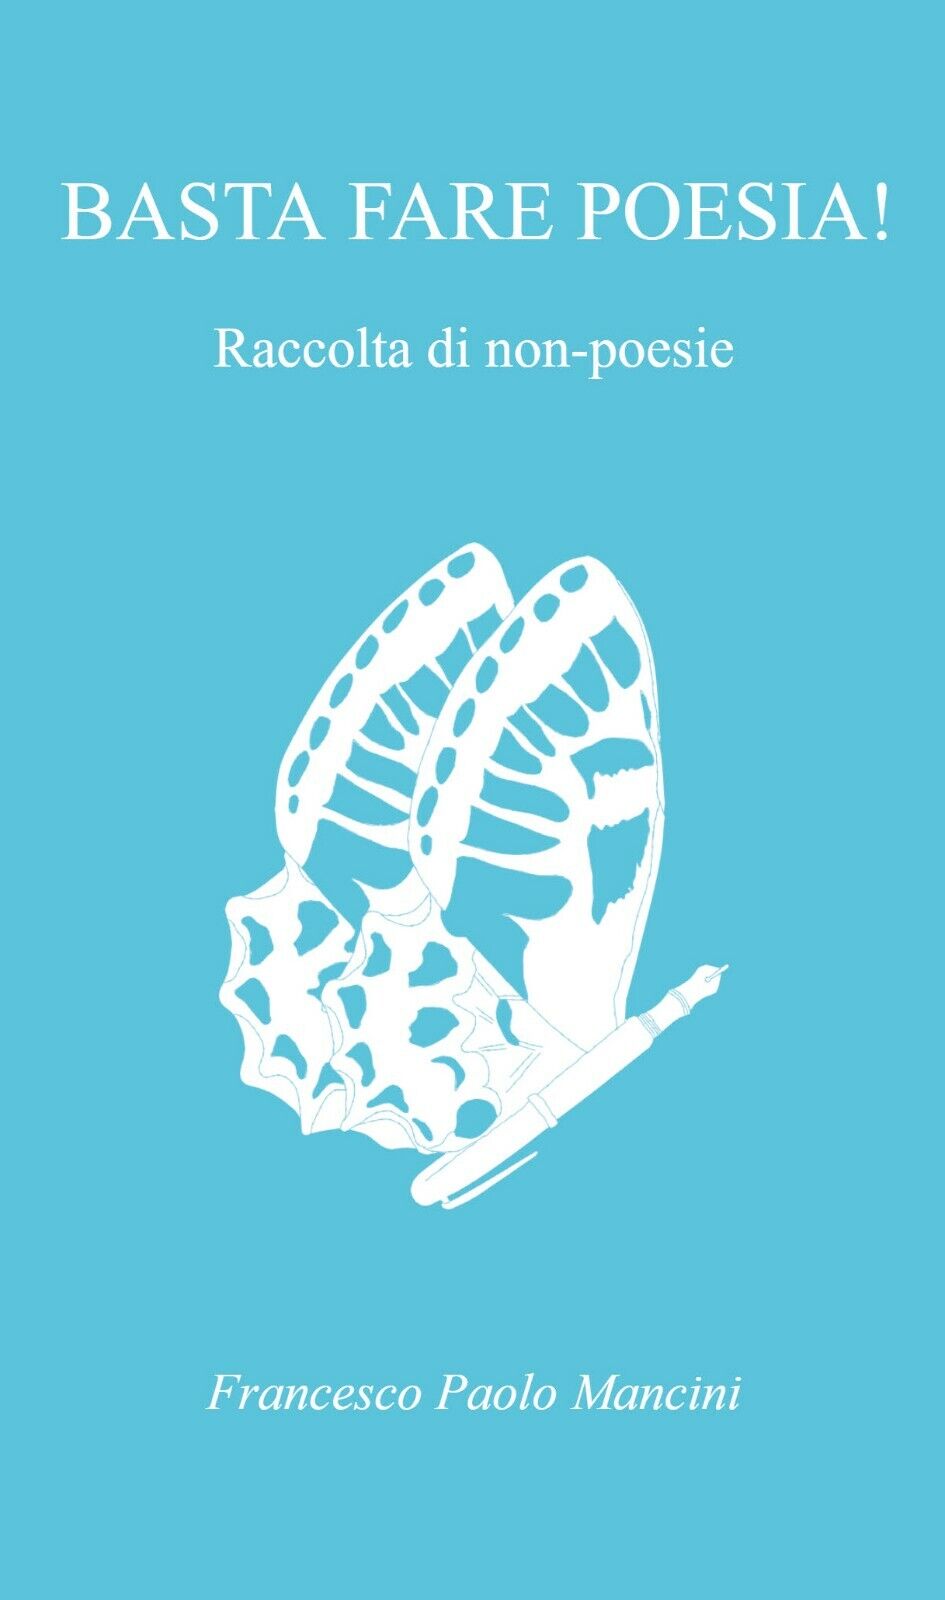 Basta fare poesia! Raccolta di non-poesie di Francesco Paolo Mancini,  2021,  Yo